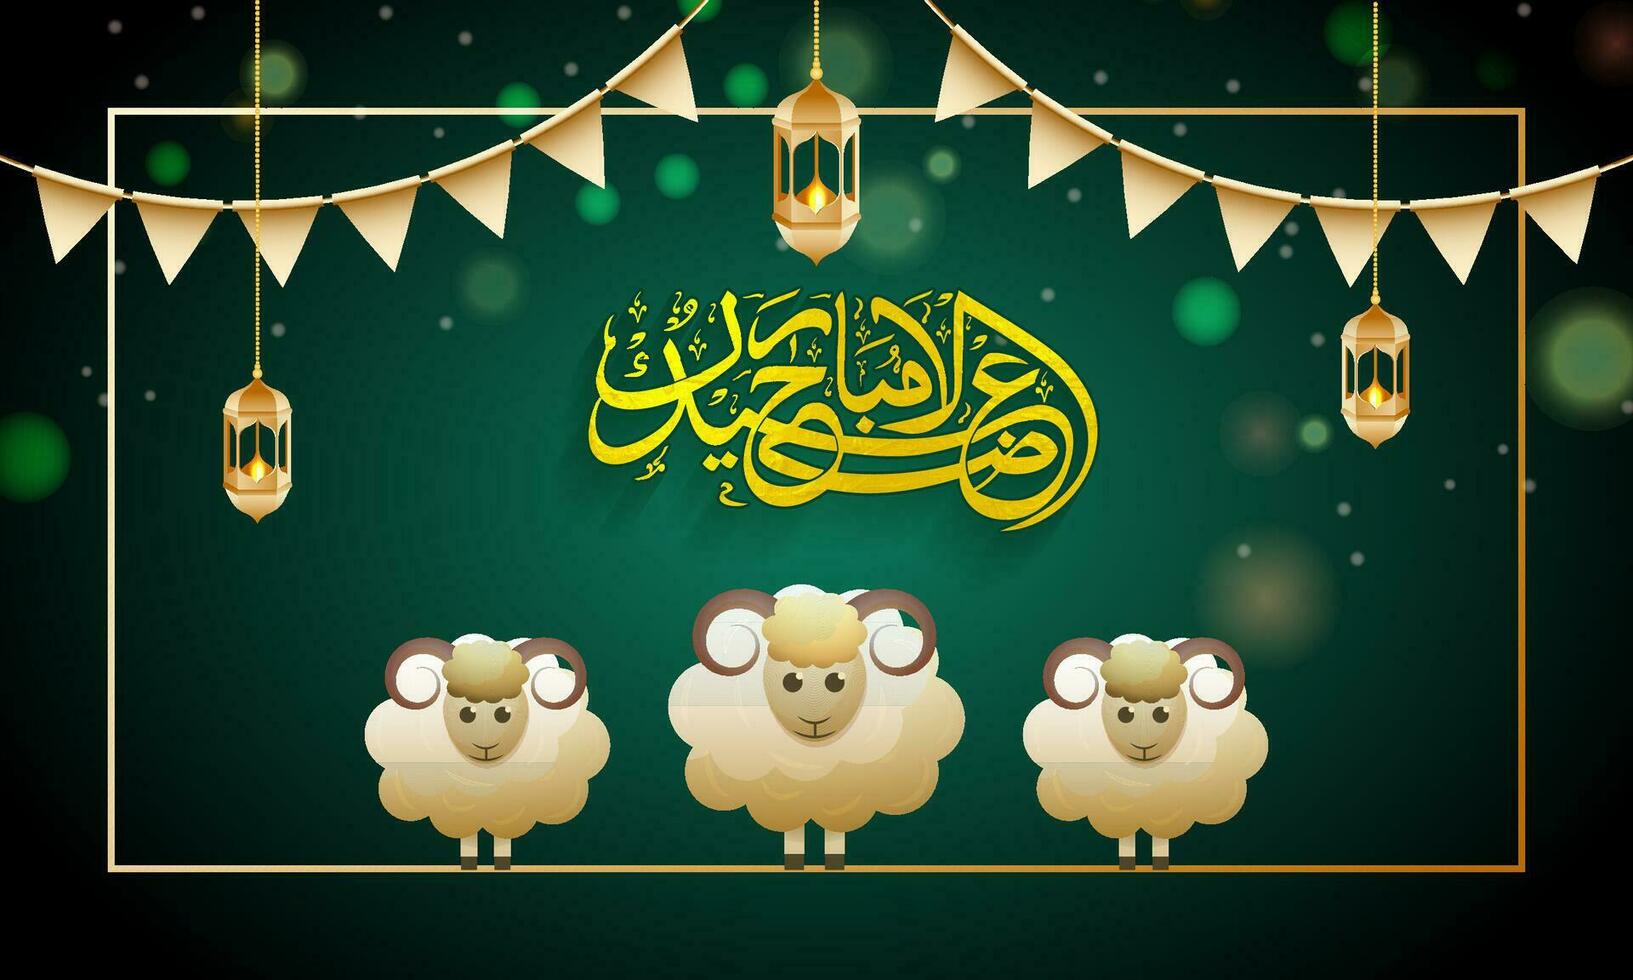 árabe caligrafia do eid-ul-adha Mubarak com três ovelha personagens, dourado iluminado lâmpadas aguentar e estamenha bandeiras em verde bokeh fundo. vetor